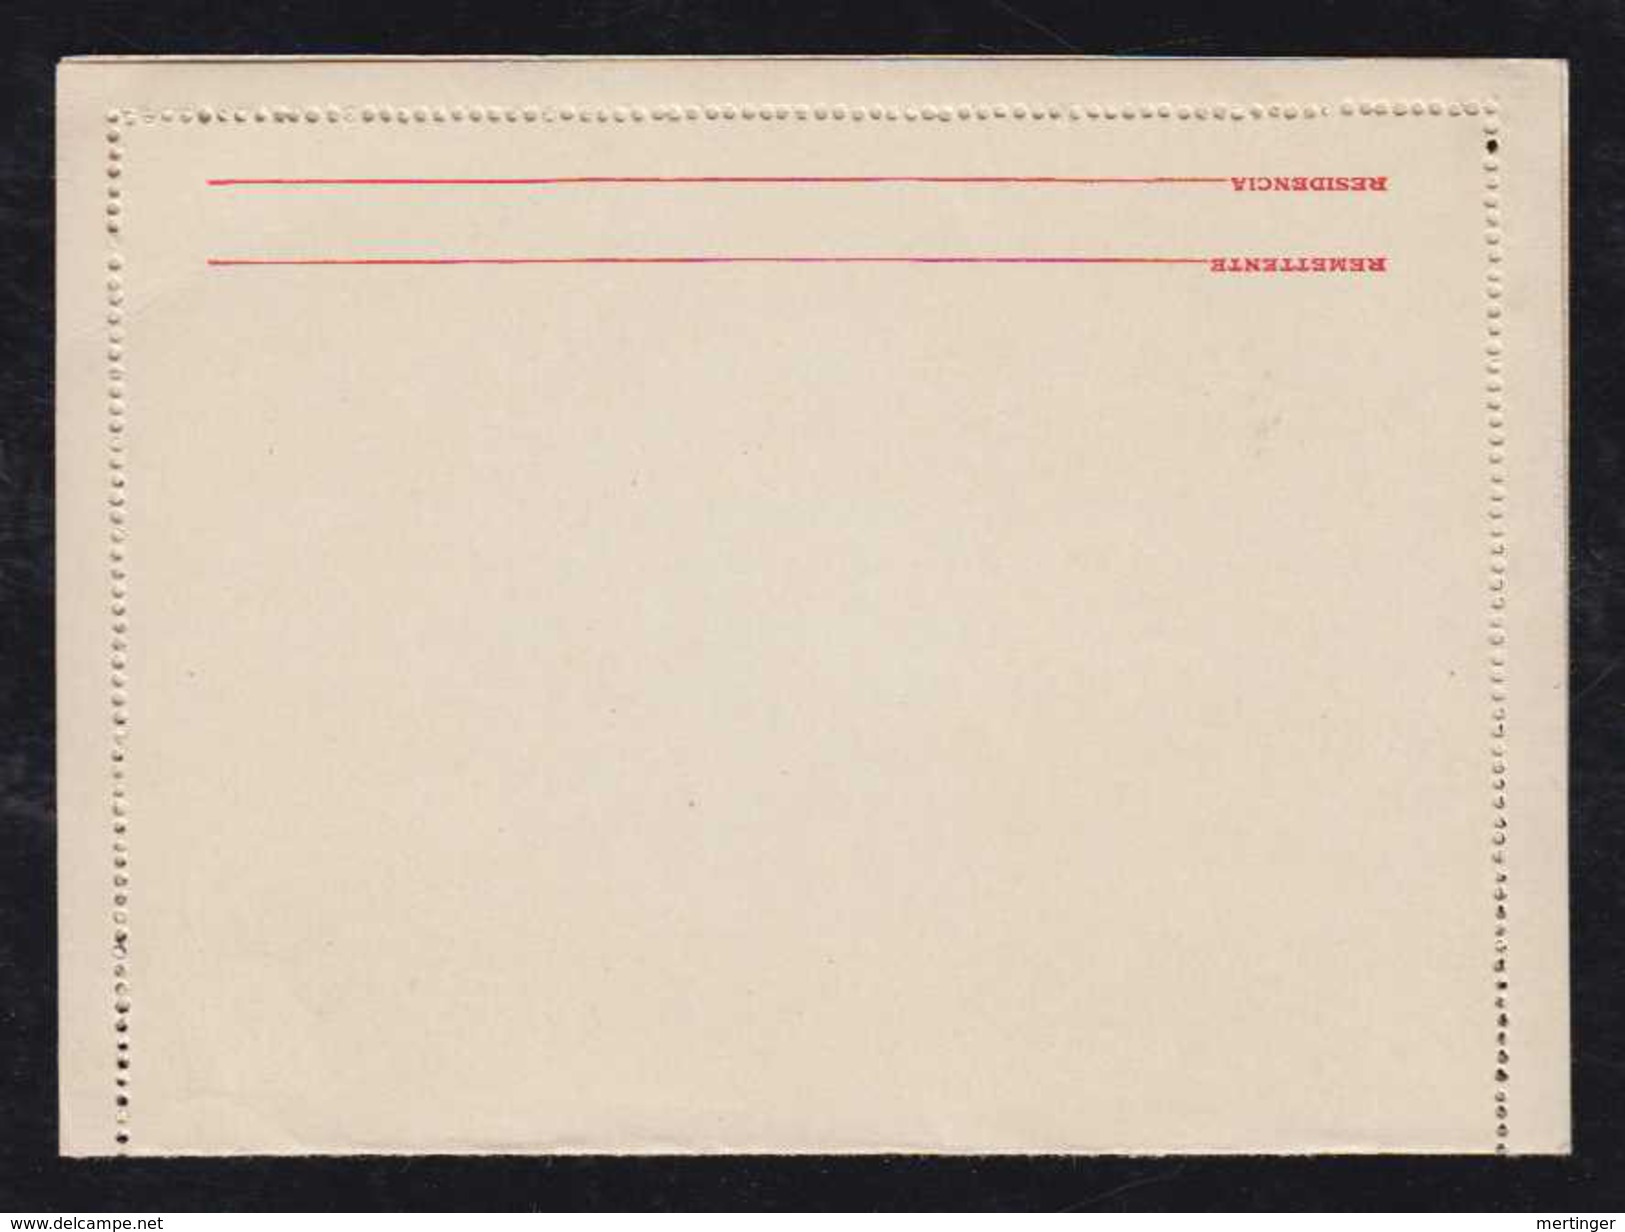 Brazil Brasil 1931 CB 95 200R Overprint Stationery Letter Card MNH - Ganzsachen